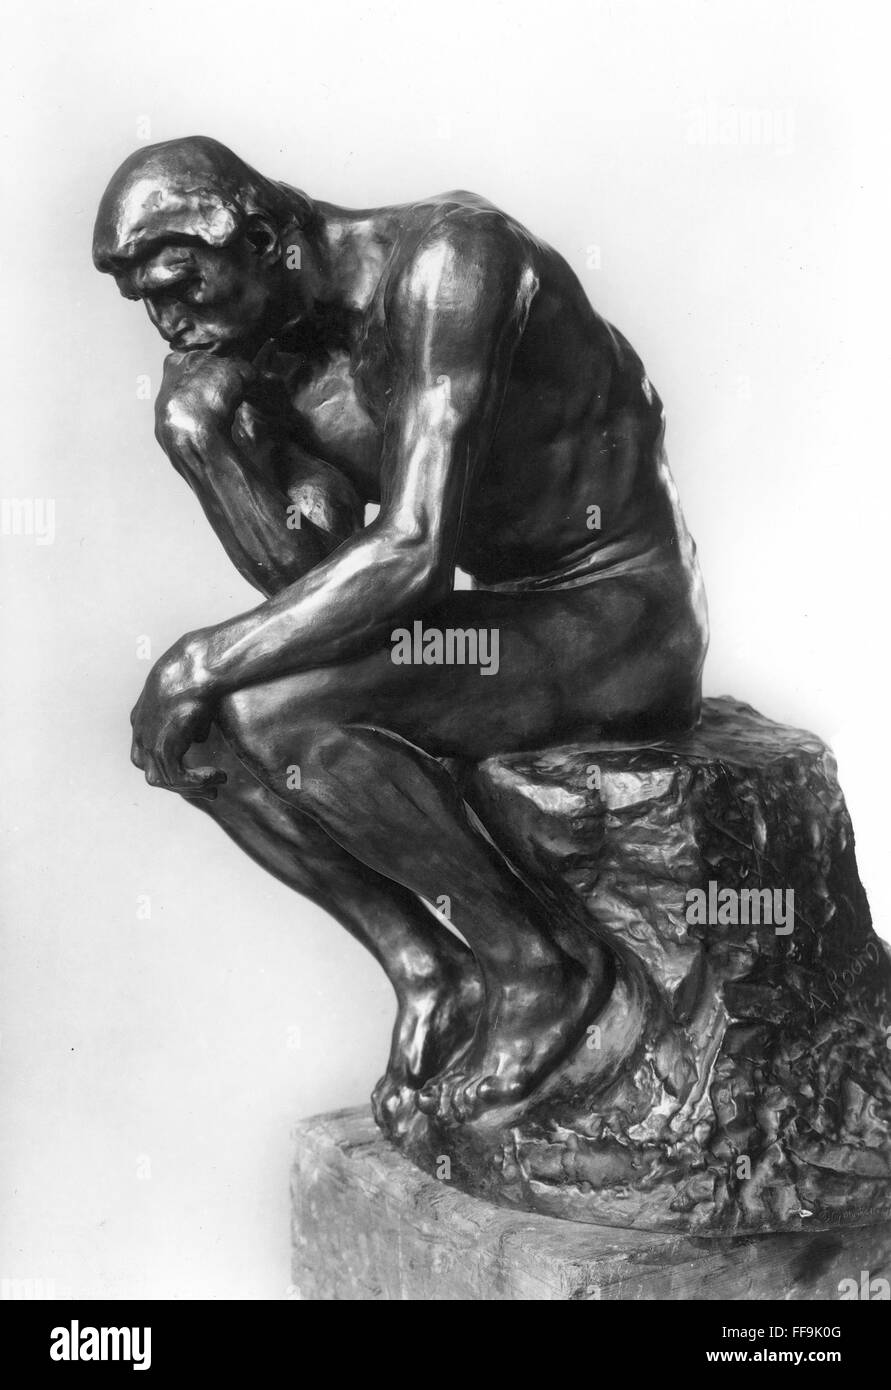 RODIN: LE PENSEUR, 1888. /Nil pensatore. Bronzo, 1888 da Auguste Rodin. Foto Stock